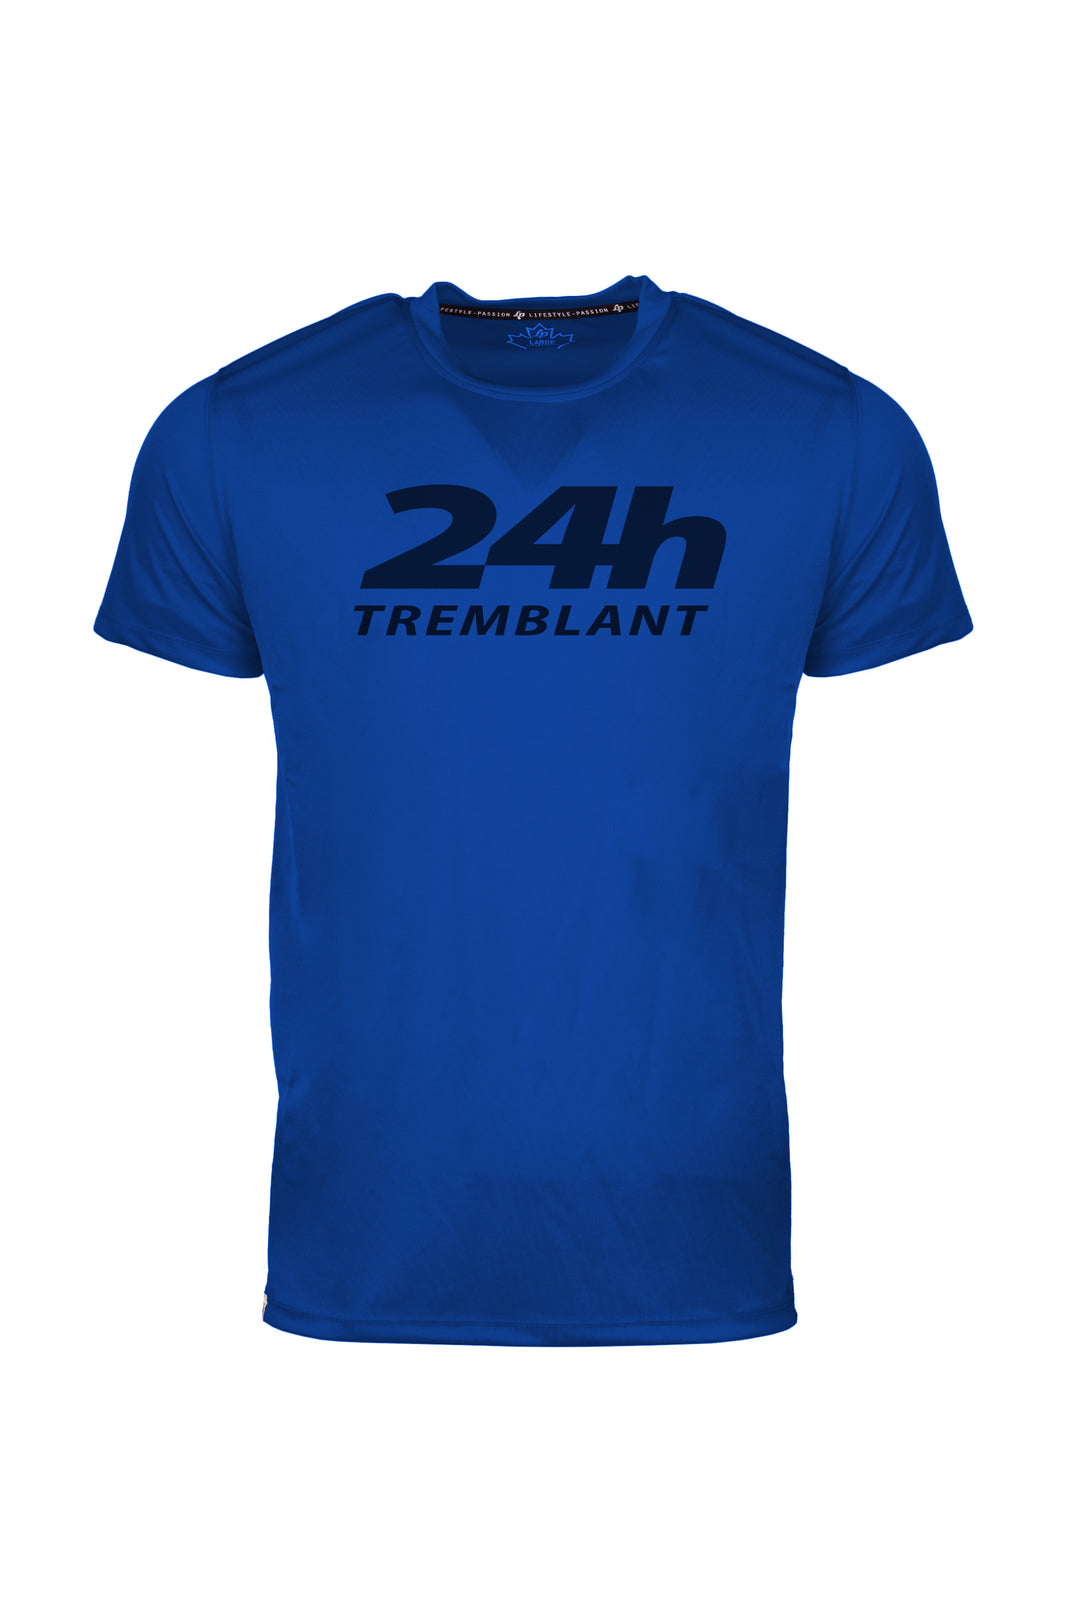 T-shirts sportif - 24h Tremblant avec nom d'équipe personnalisable [Bleu]